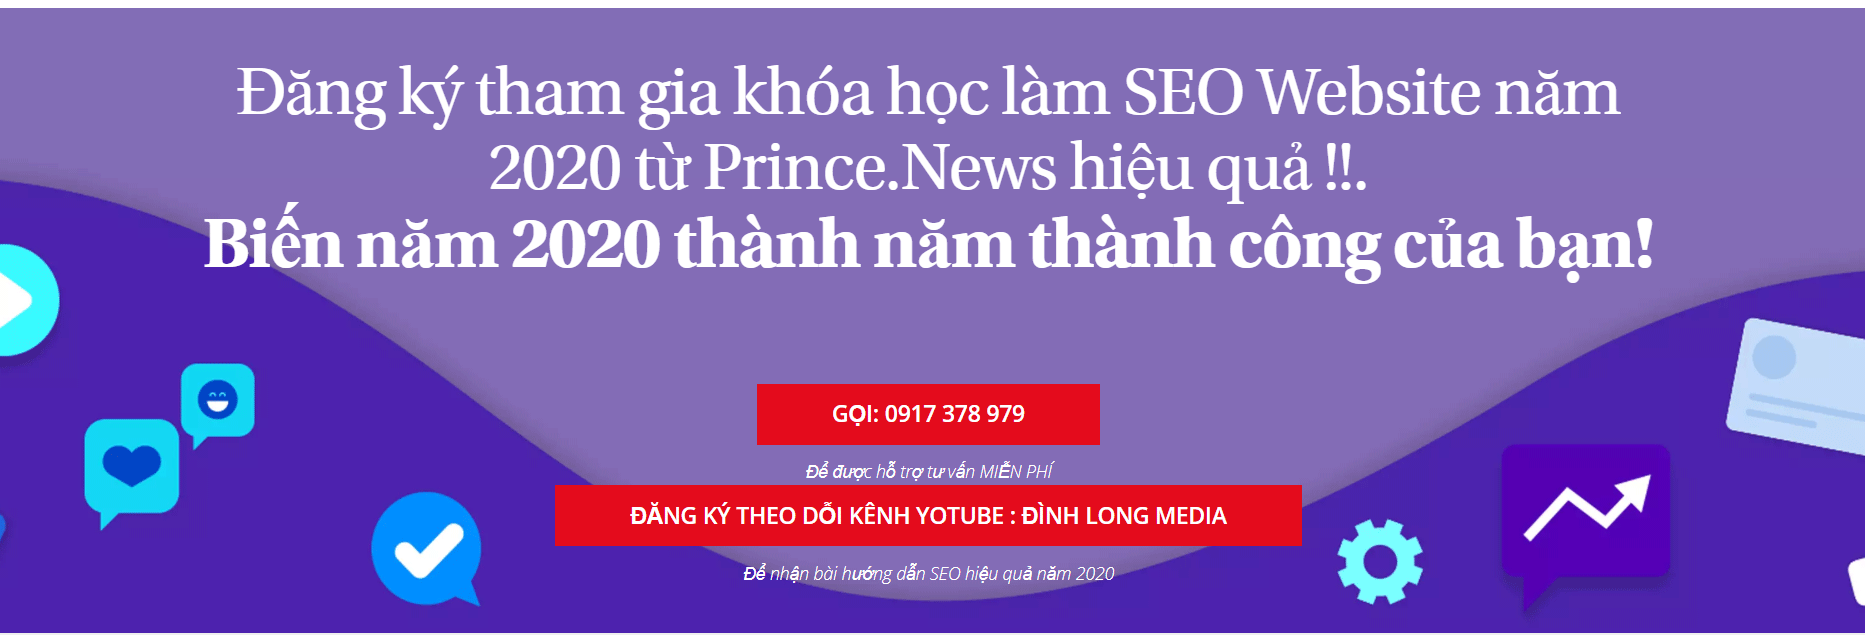 Cách SEO Website Hiệu Quả cho năm 2020 từ Prince.News